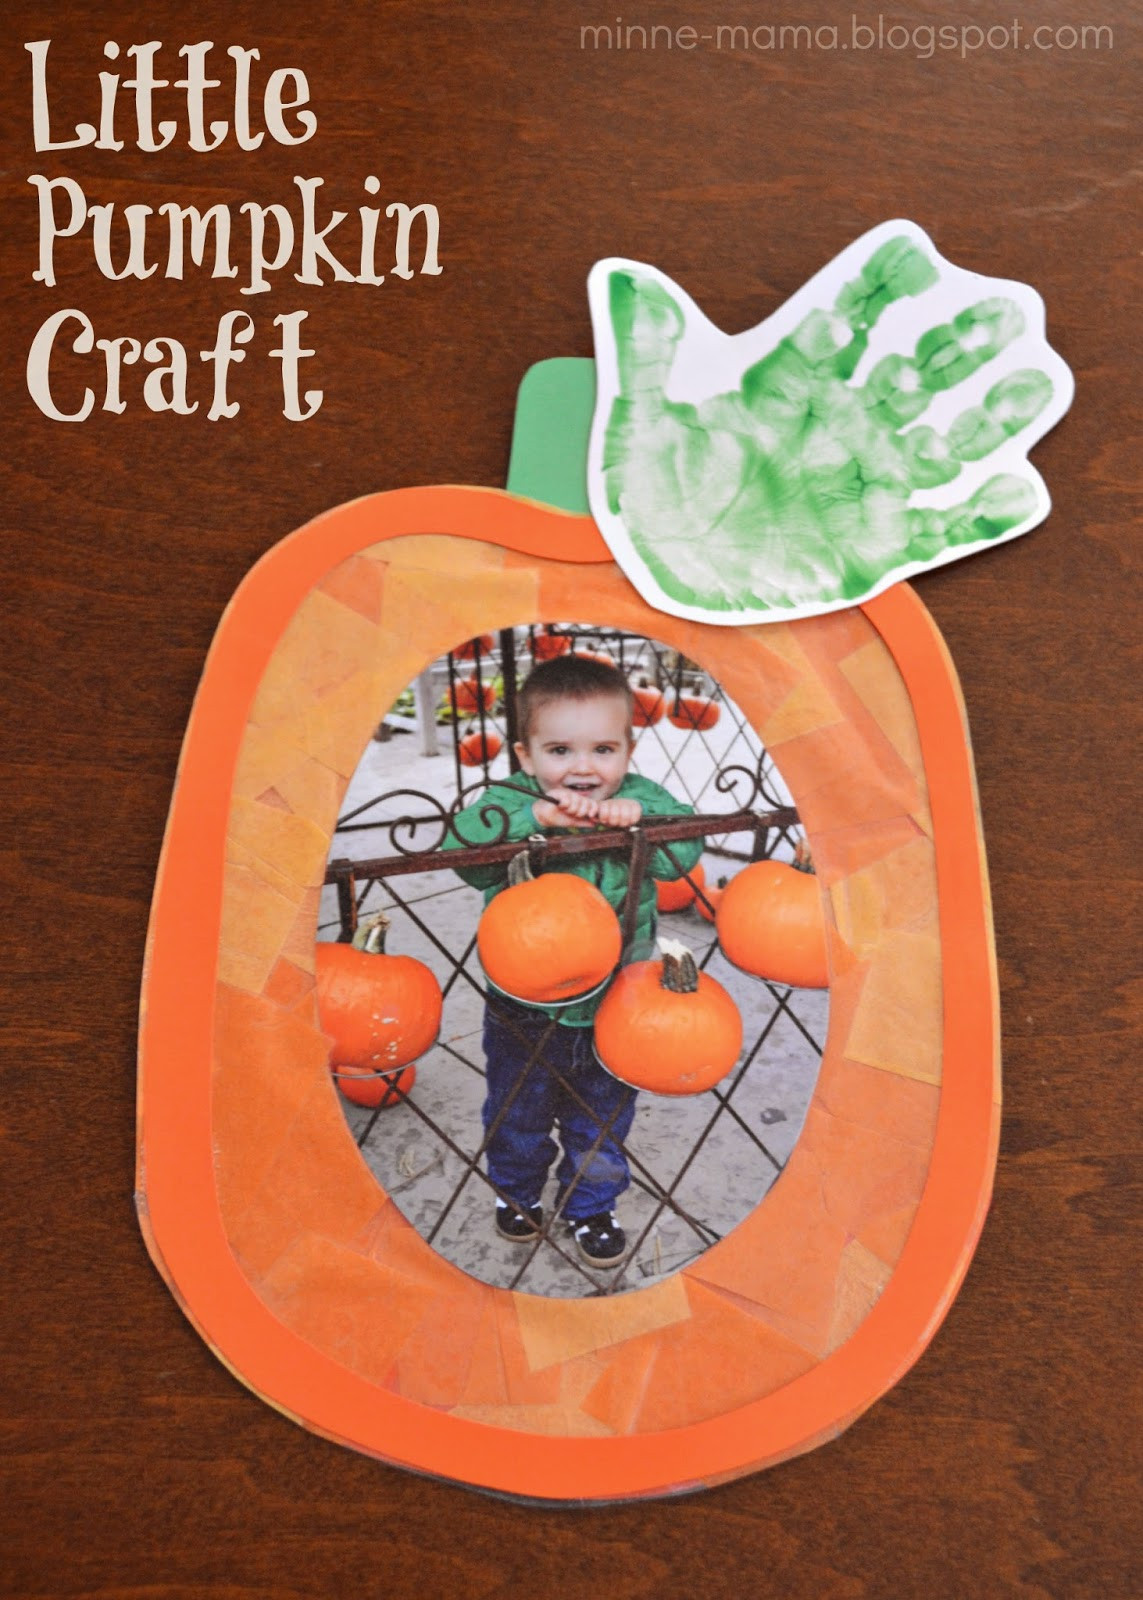 Pumpkin Craft Ideas Preschoolers
 Minne Mama Little Pumpkin Craft